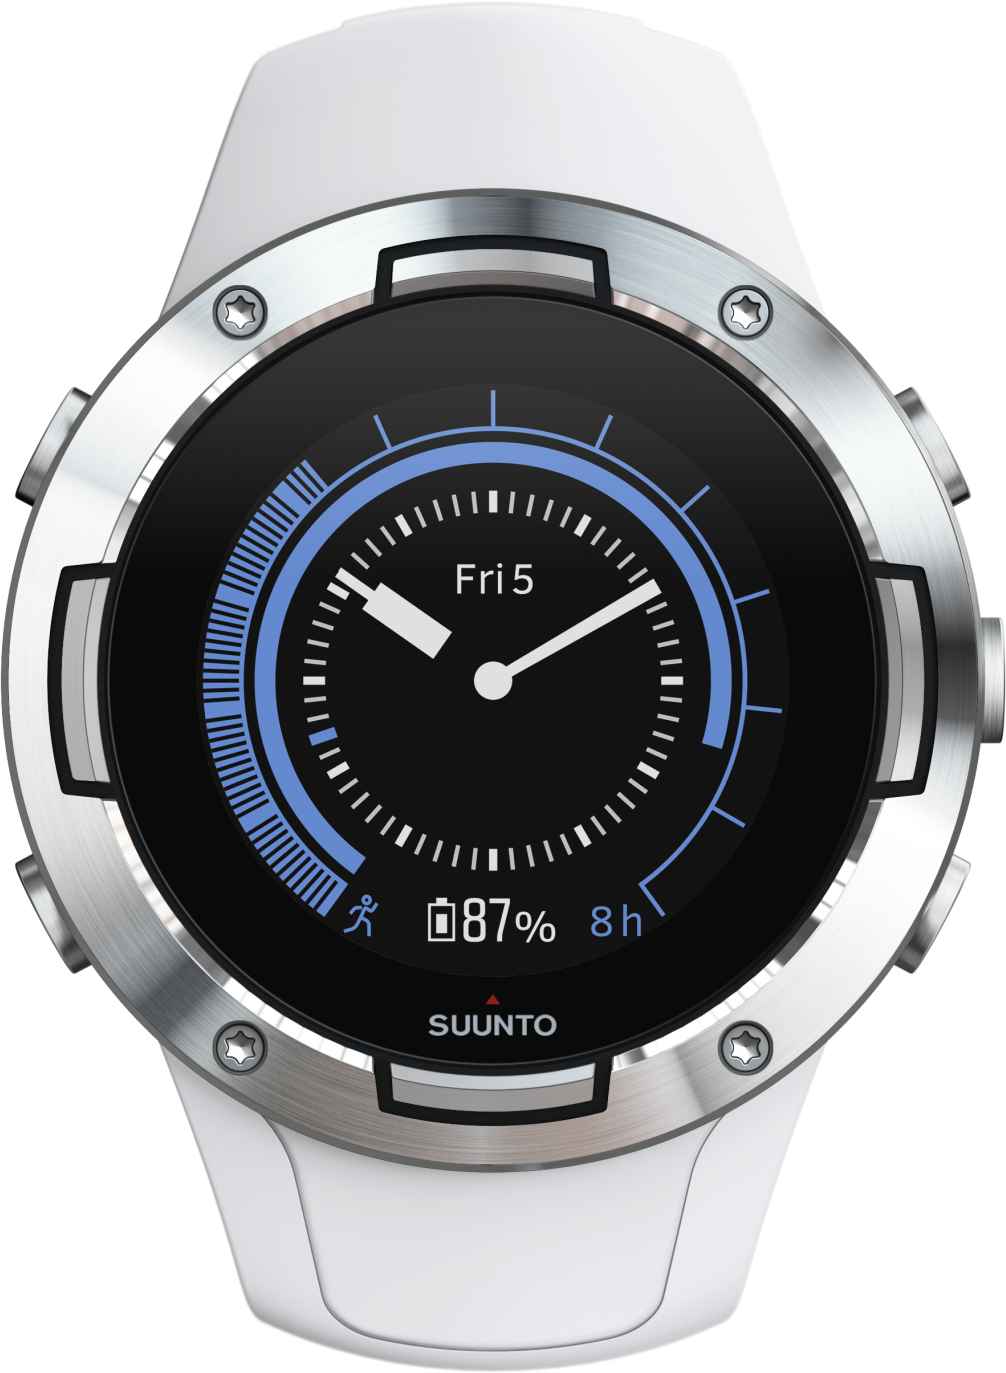 Multisport GPS watch